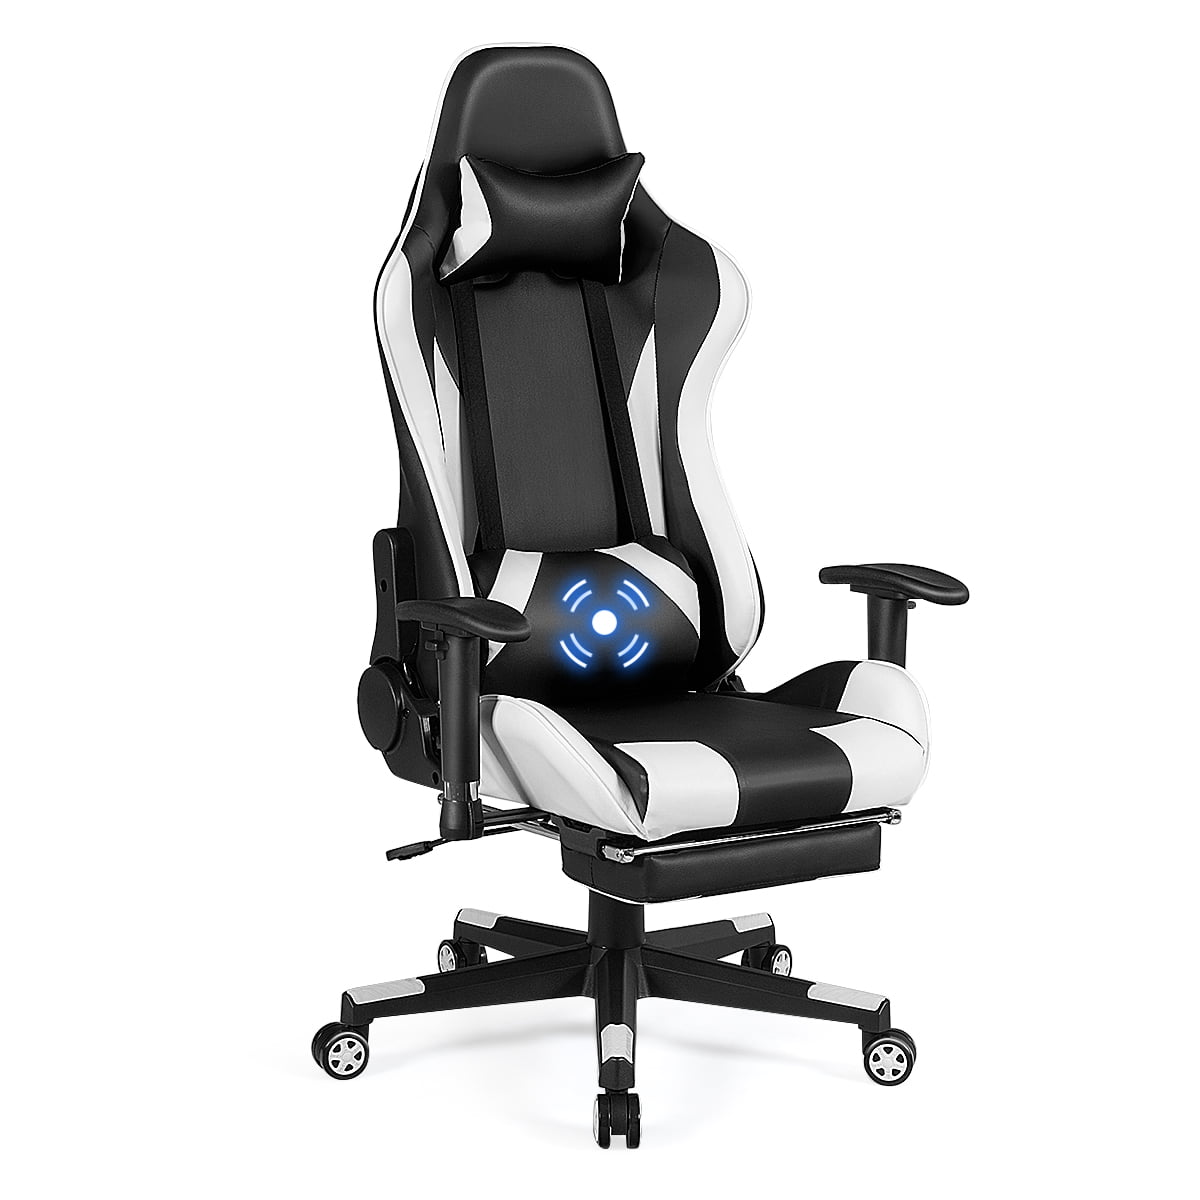 Costway Massage Gaming Chair Recliner Gamer Racing Chair W Lumbar Support Footrest Walmart Com Walmart Com